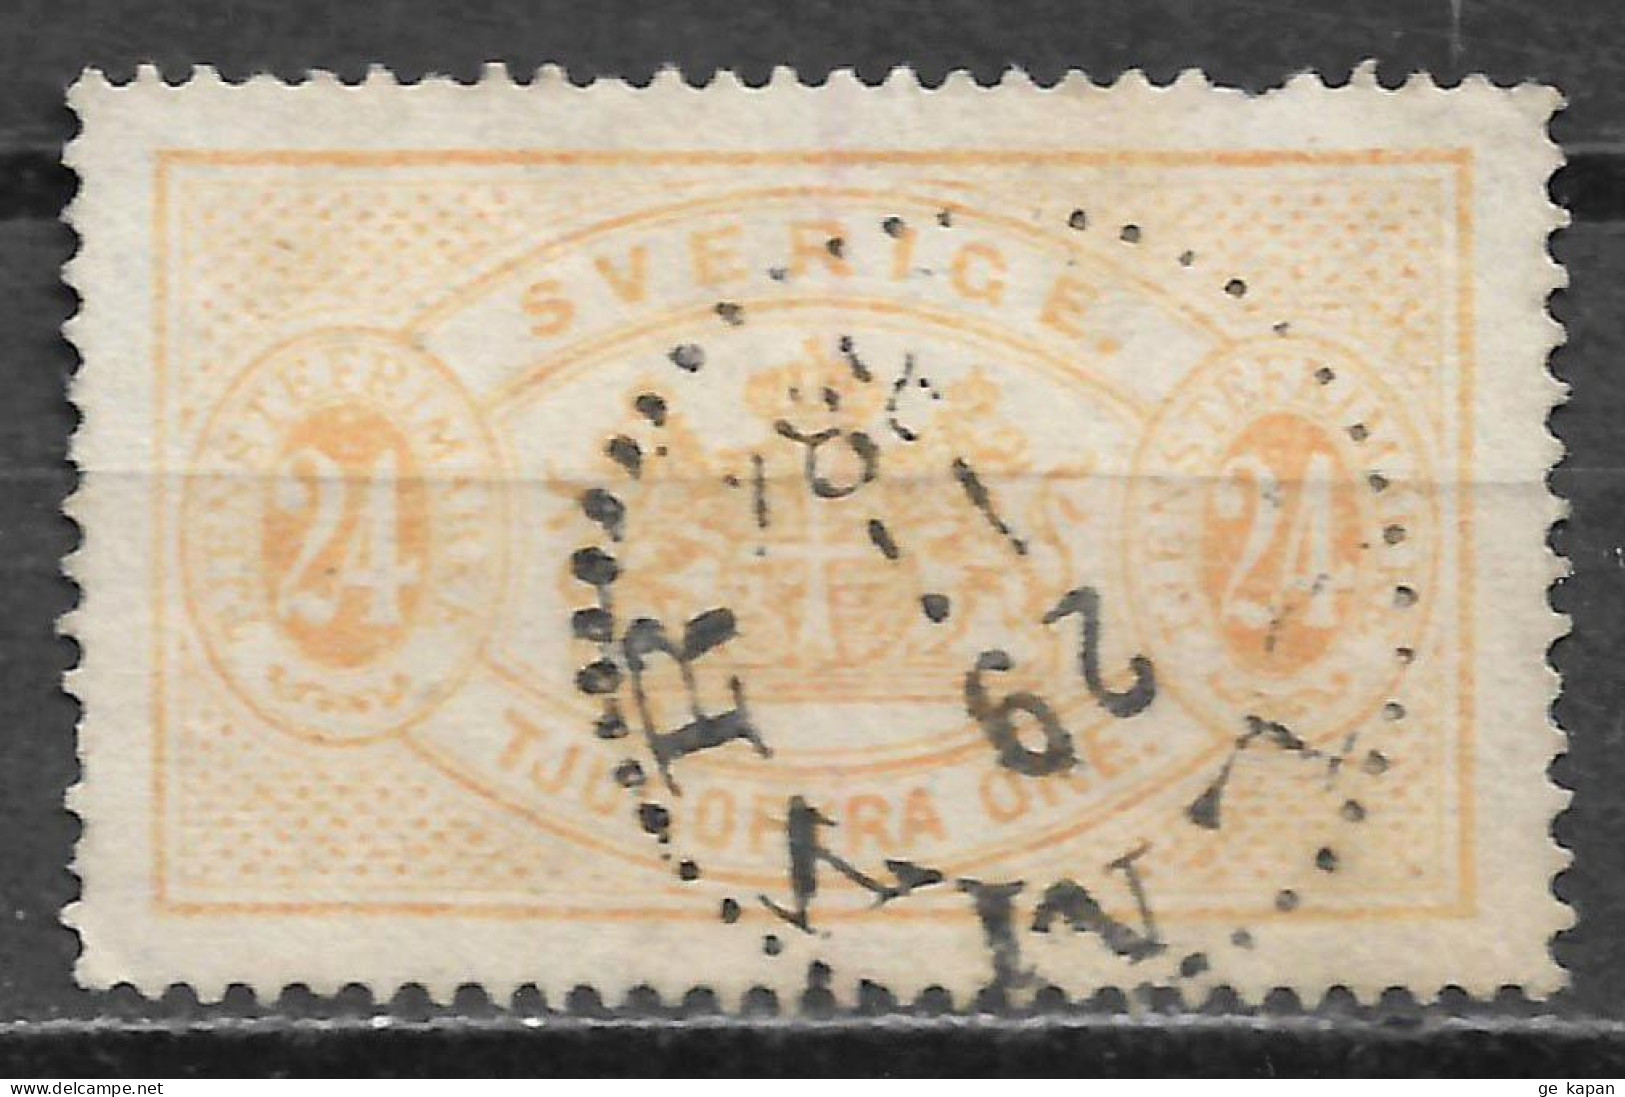 1881 SWEDEN Official USED STAMP Perf.13 (Scott # O21a) CV $22.50 - Dienstzegels